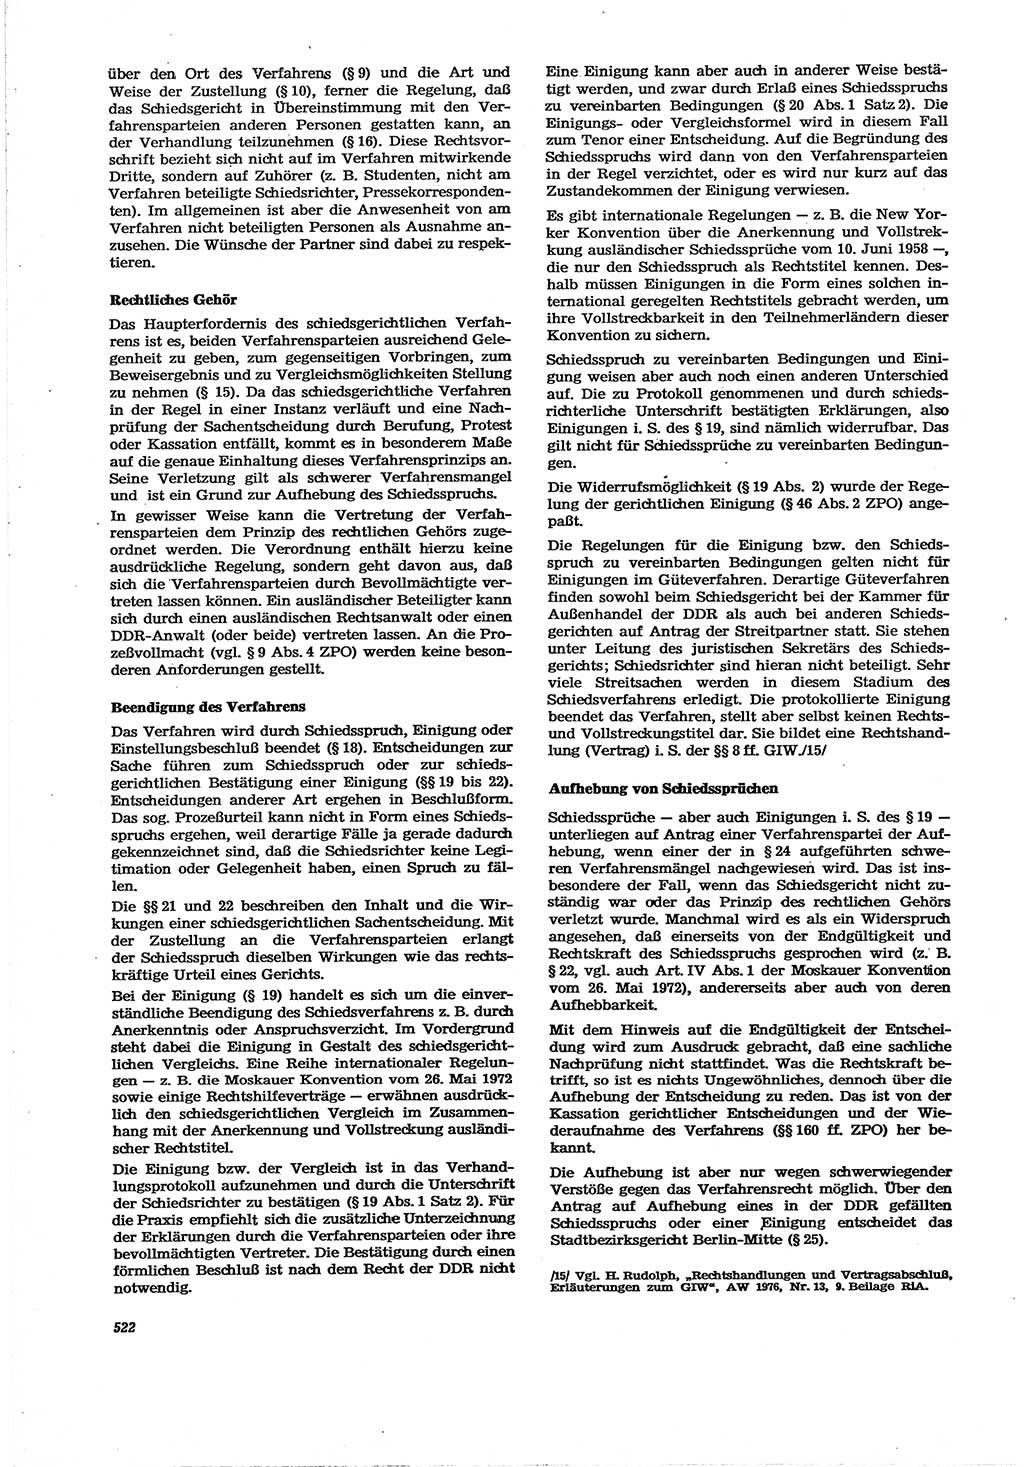 Neue Justiz (NJ), Zeitschrift für Recht und Rechtswissenschaft [Deutsche Demokratische Republik (DDR)], 30. Jahrgang 1976, Seite 522 (NJ DDR 1976, S. 522)